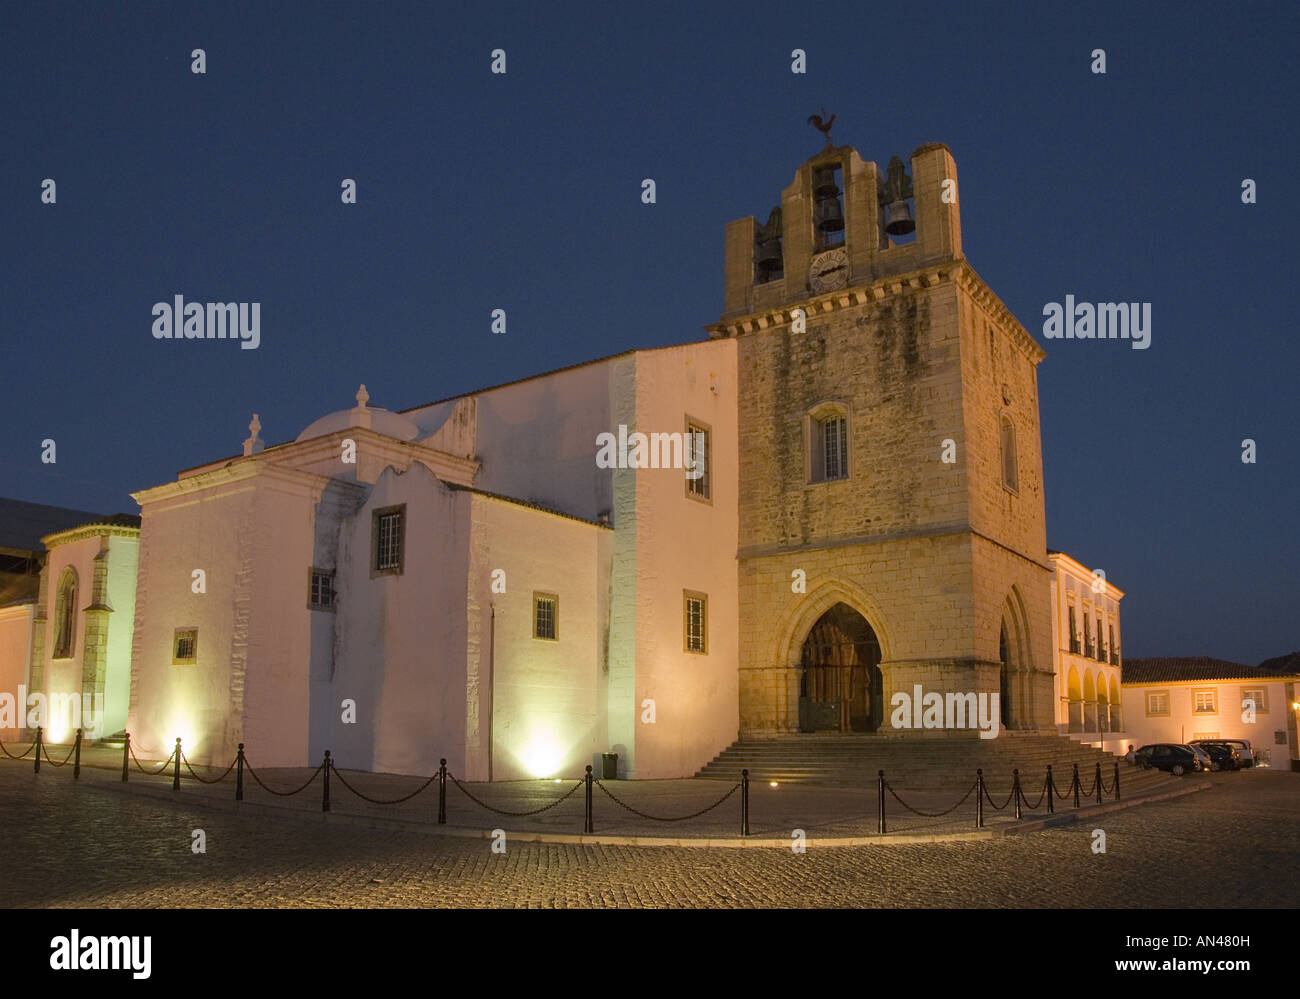 Le Portugal, l'Algarve, Faro, la cathédrale, la place de l'église de la vieille ville de nuit Banque D'Images